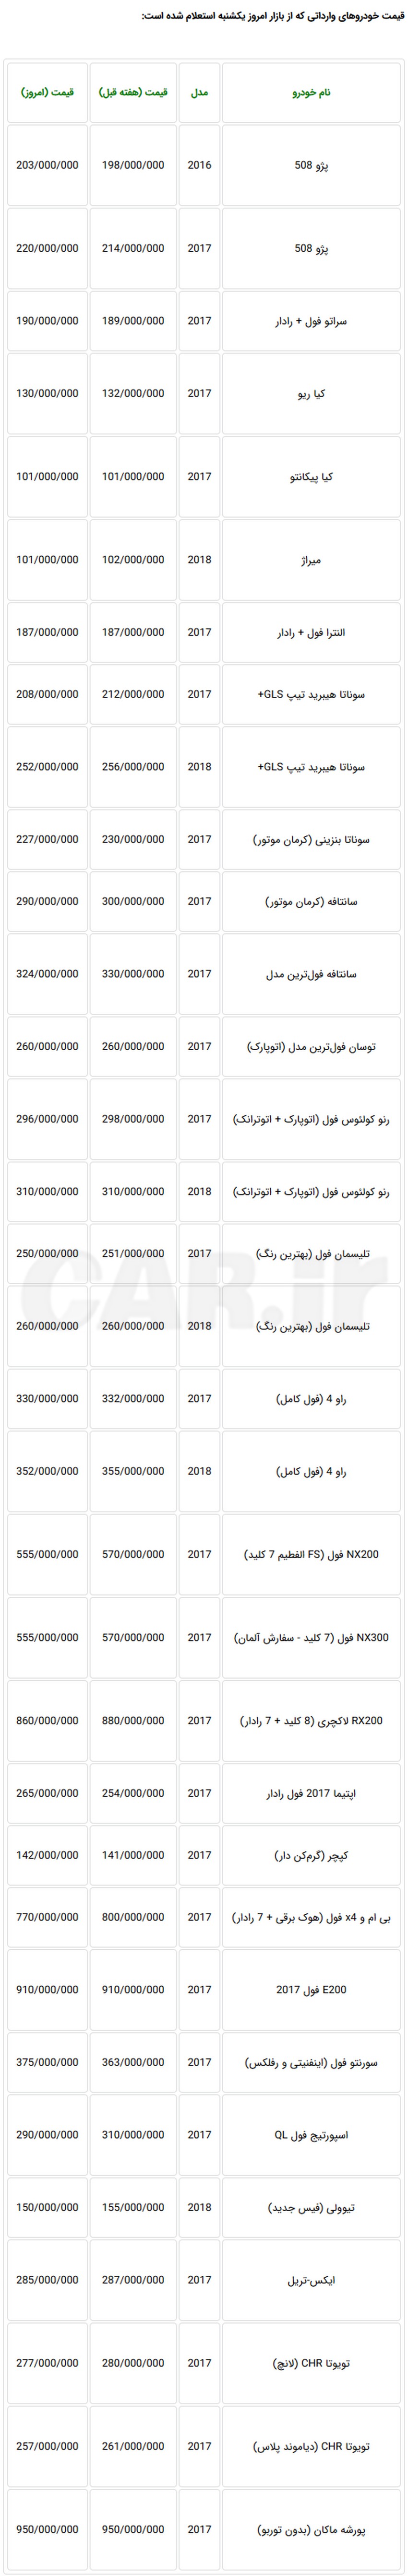 کاهش قیمت مجدد خودروهای وارداتی در بازار تهران + جدول
